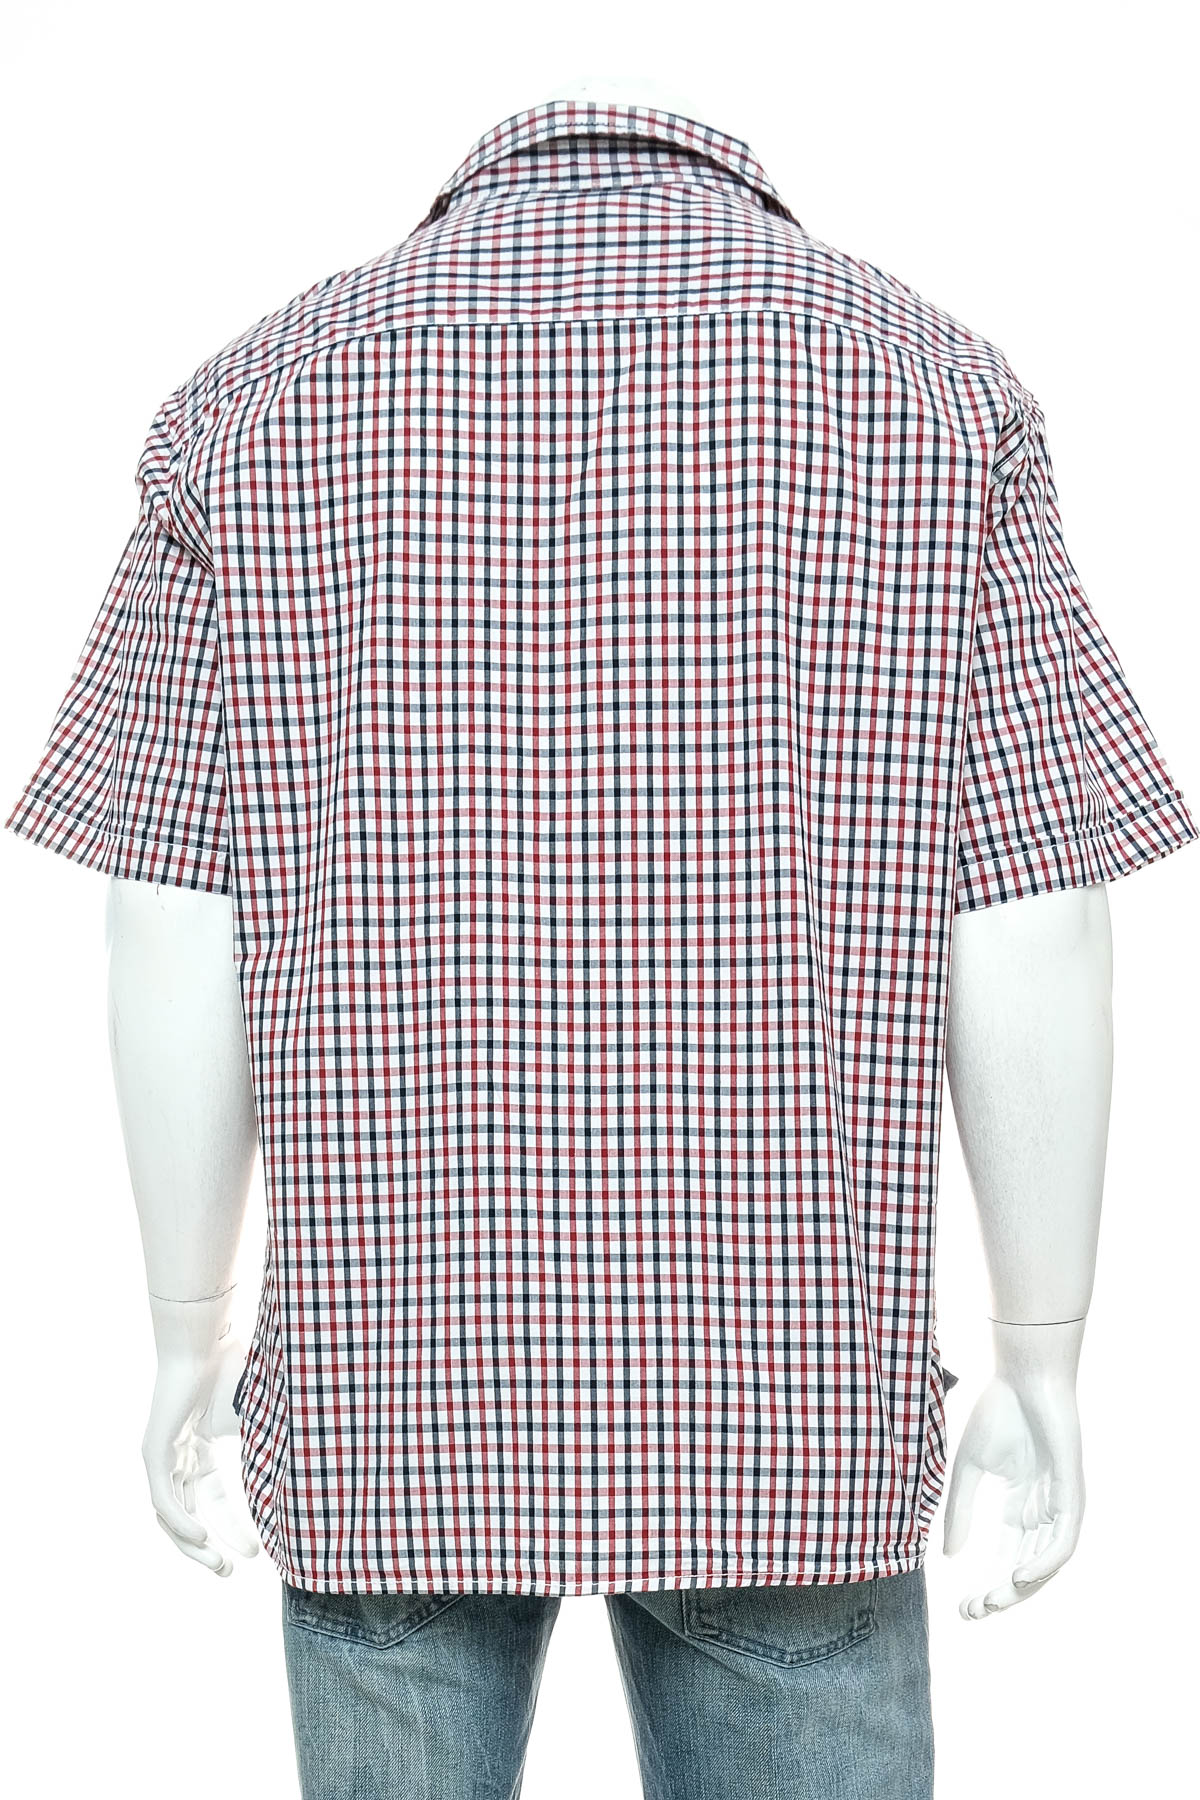 Ανδρικό πουκάμισο - Emerson - 1